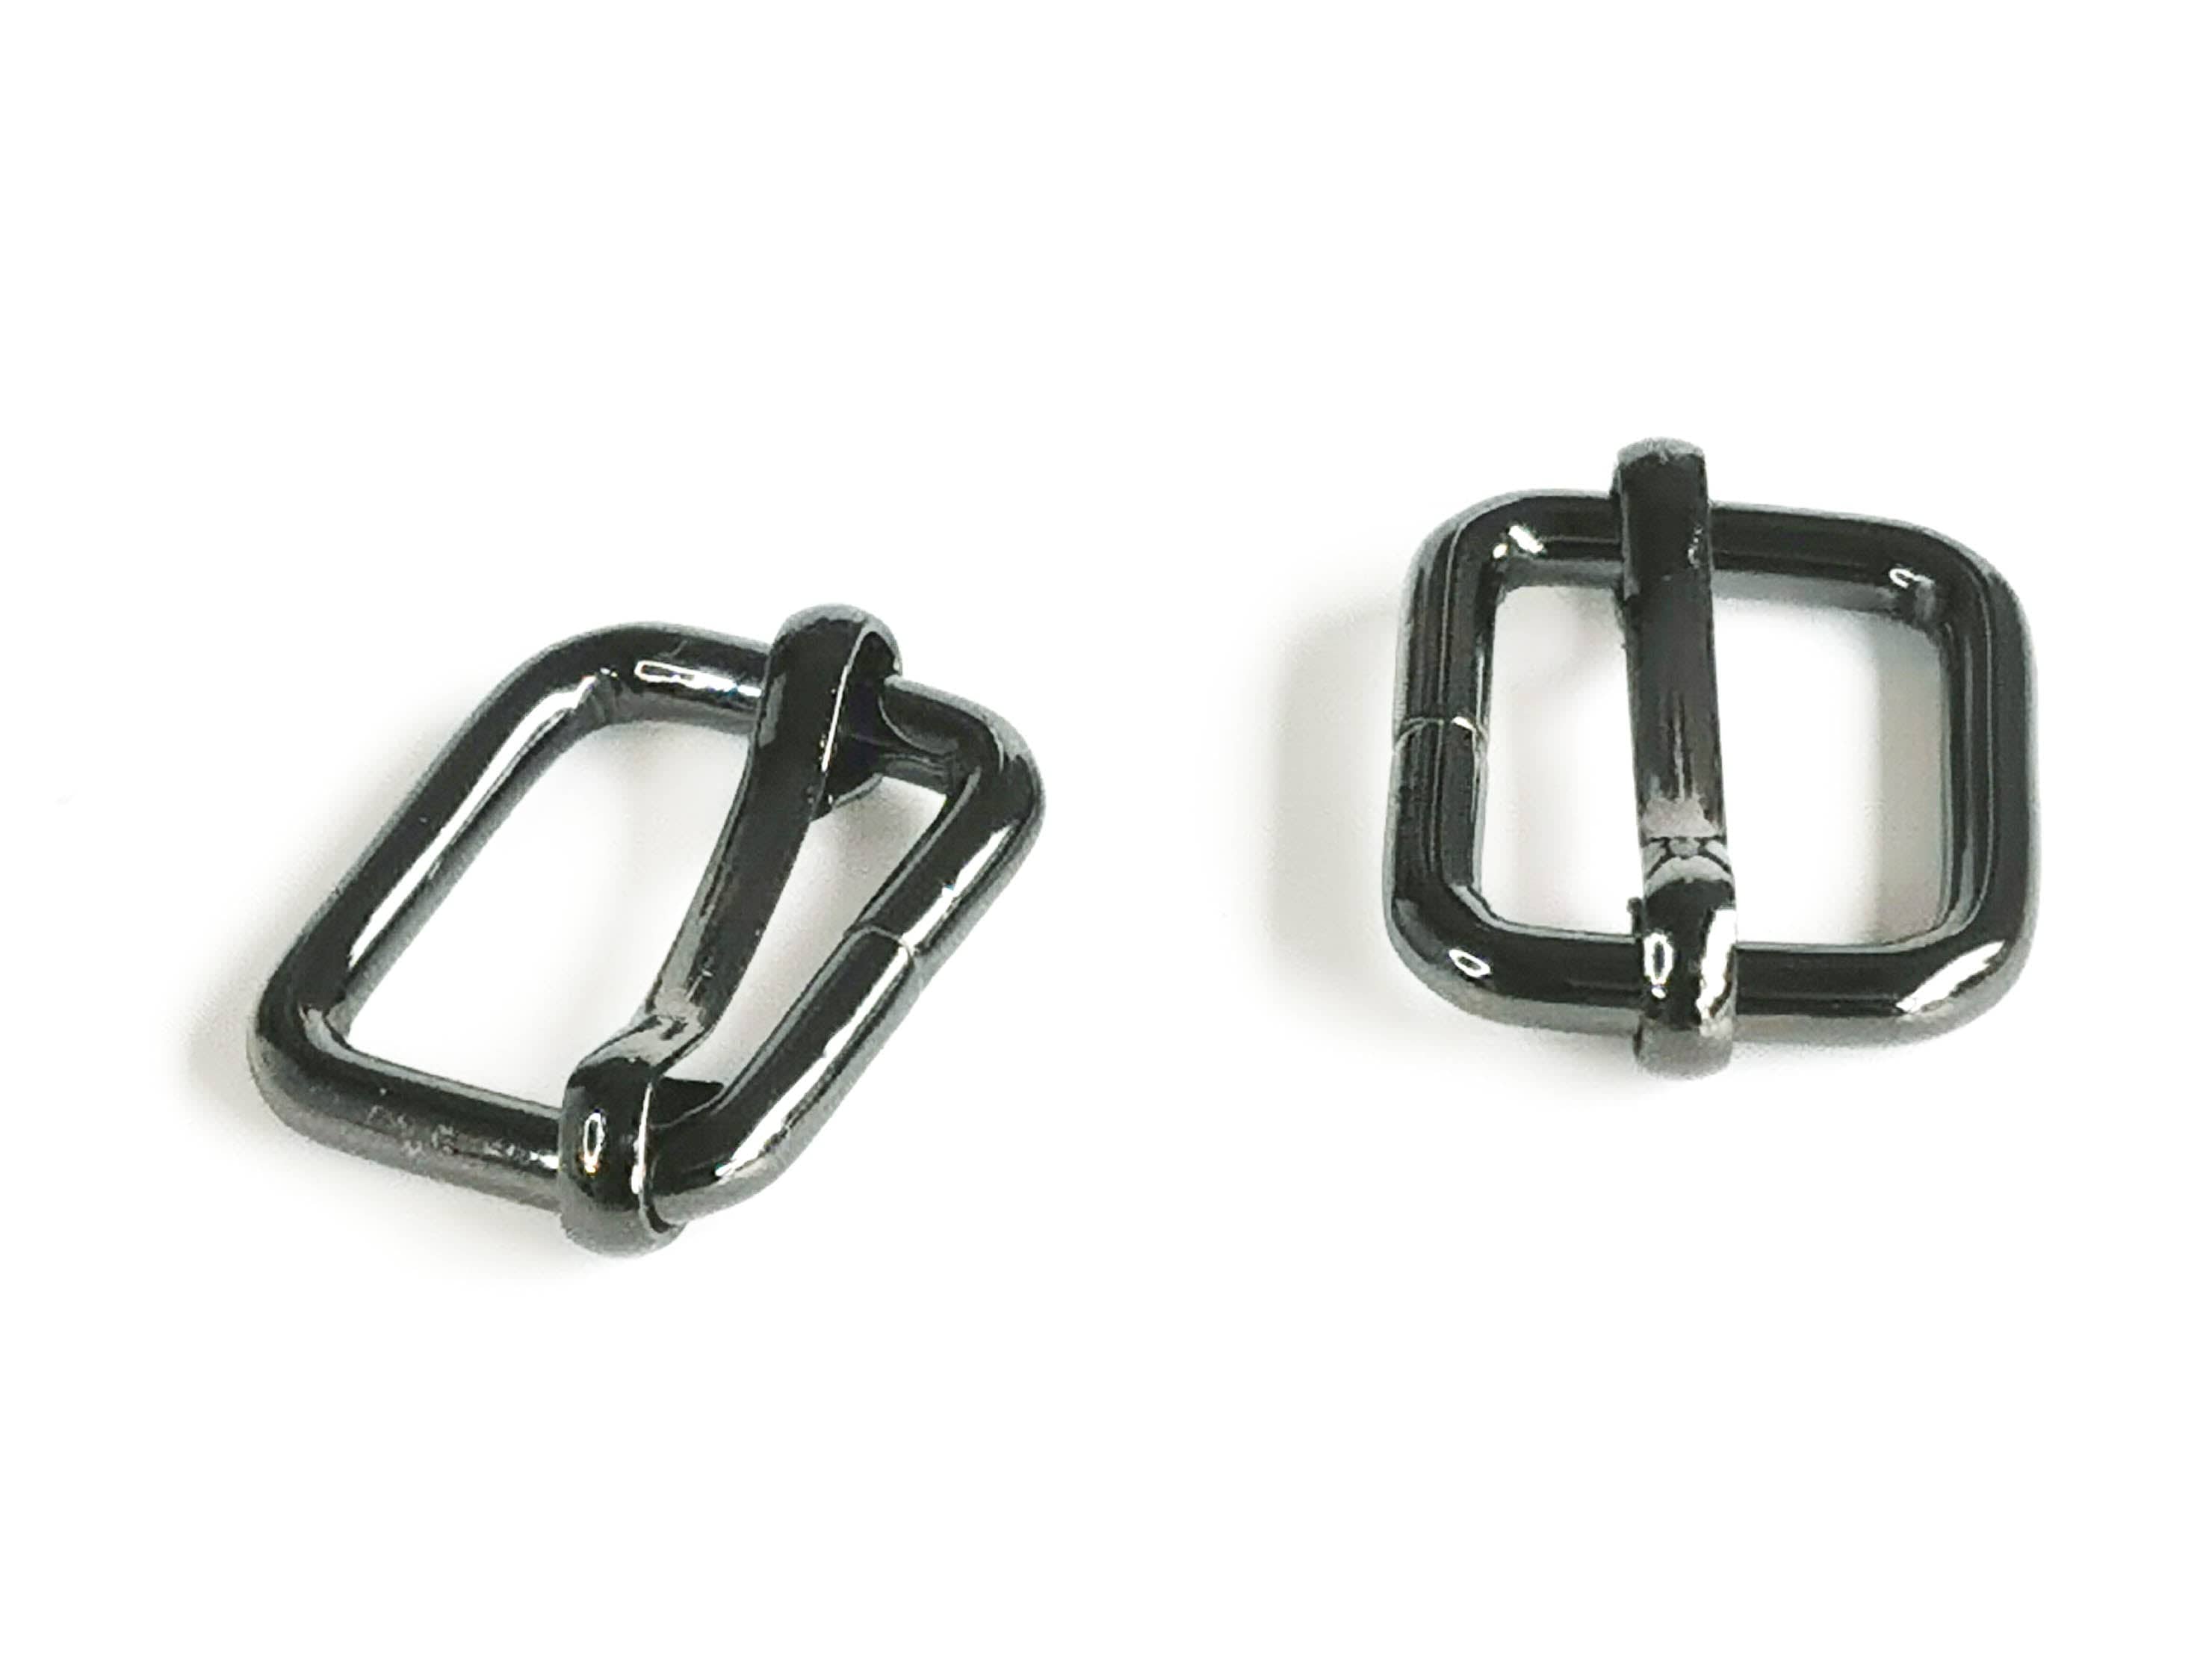 Adjustable Strap Sliders by Emmaline Bags - Kiwi Bagineers